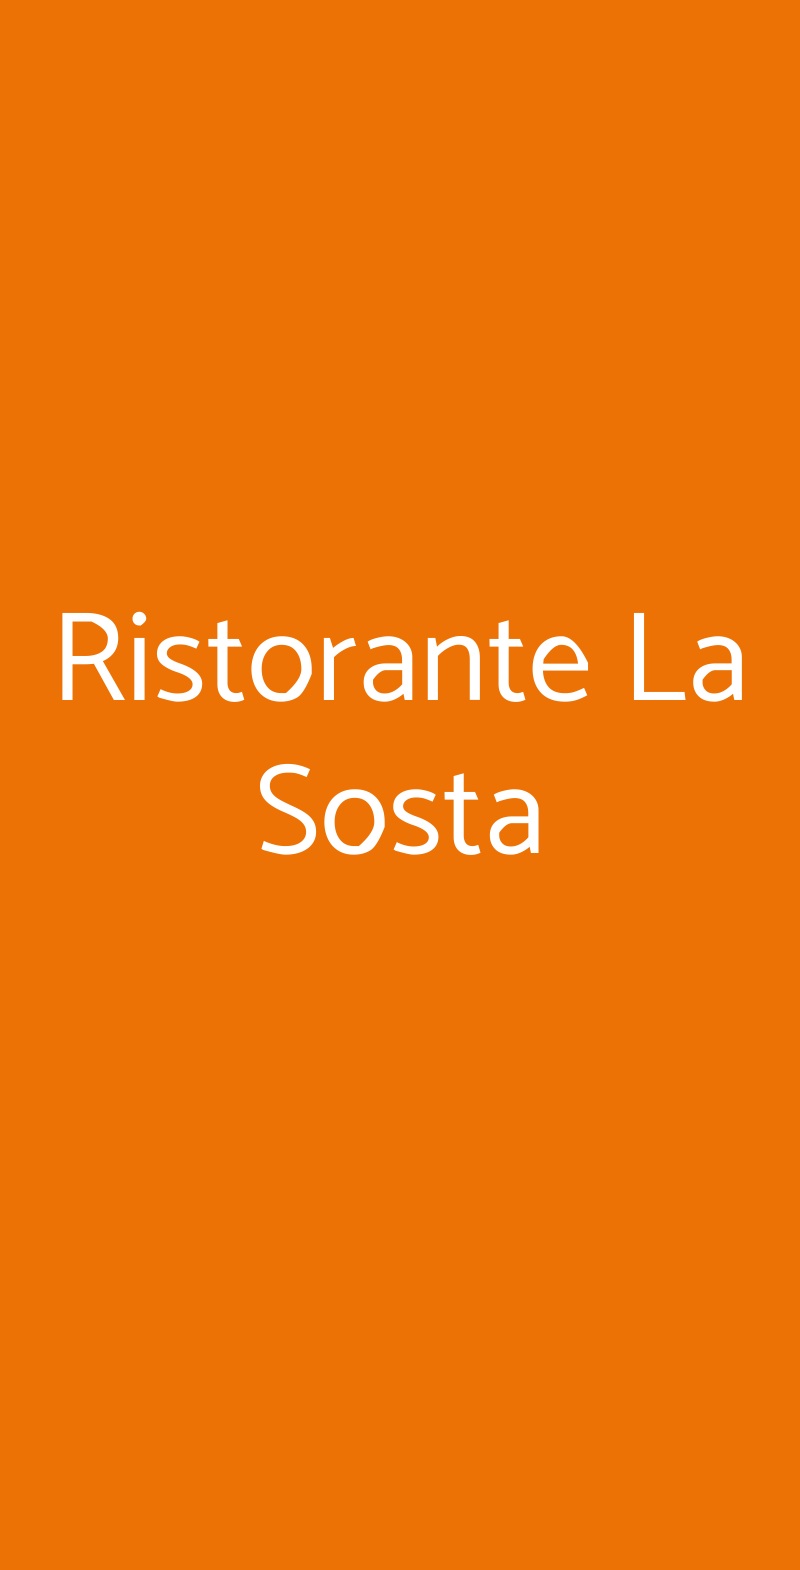 Ristorante La Sosta Brescia menù 1 pagina